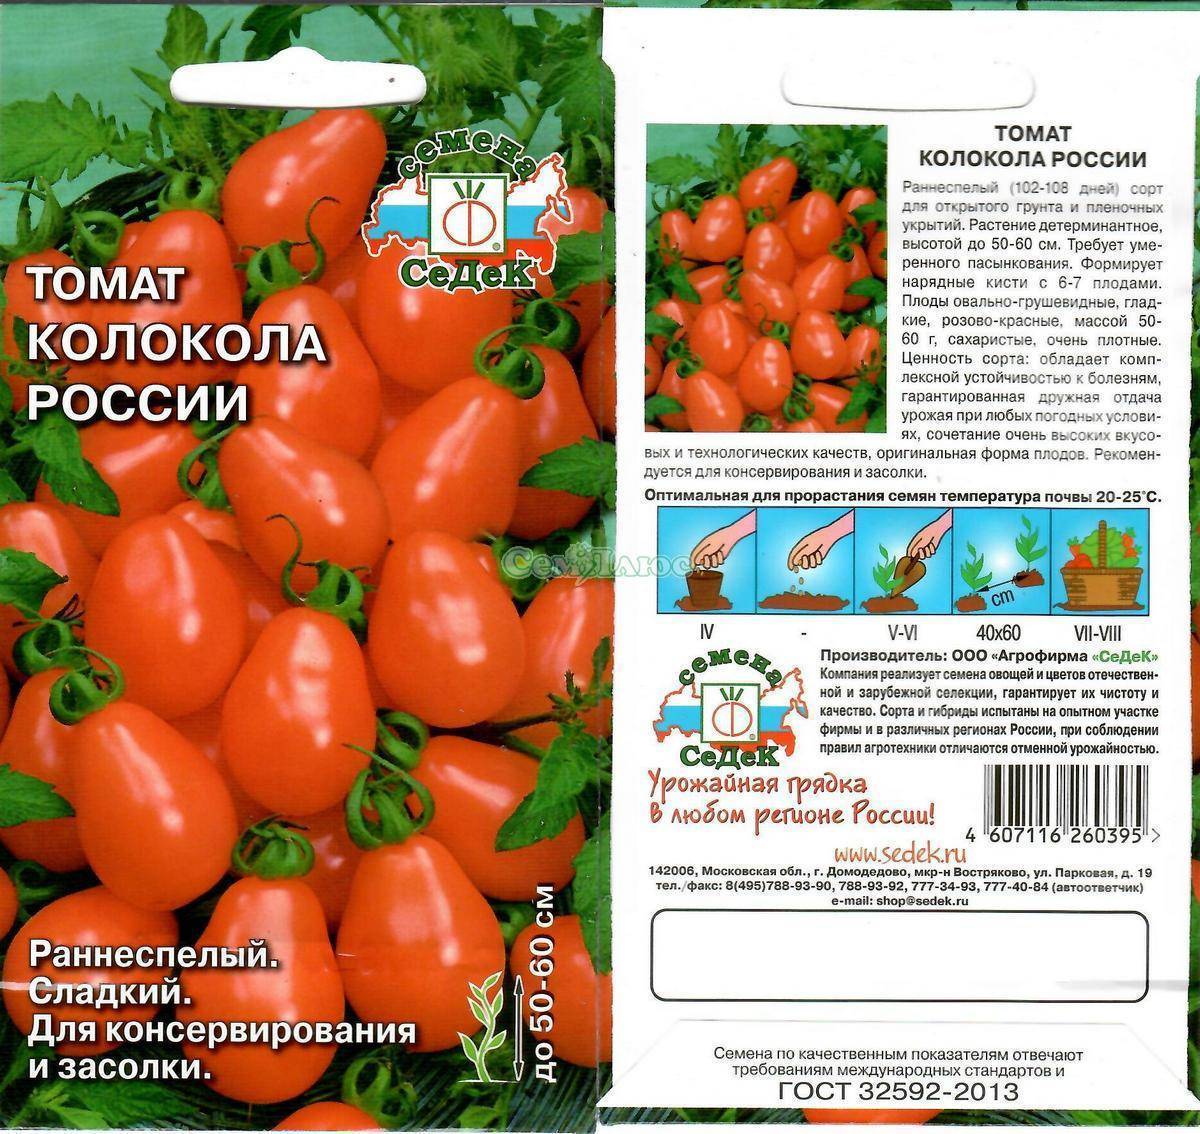 Томаты сорта "пулька": описание помидоров, урожайность, страна происхождение и подверженность вредителям русский фермер